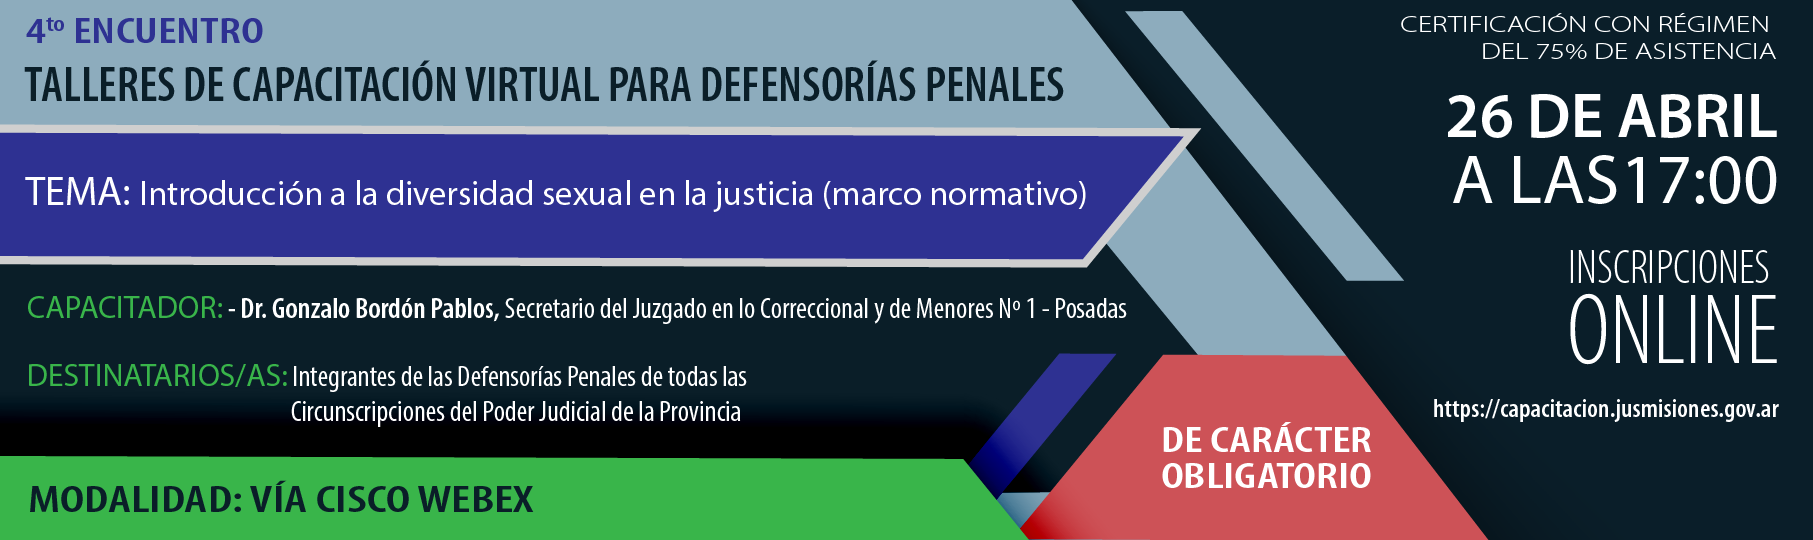 P4_Talleres_de_cap_virtual_para_Defensoras_penales-01